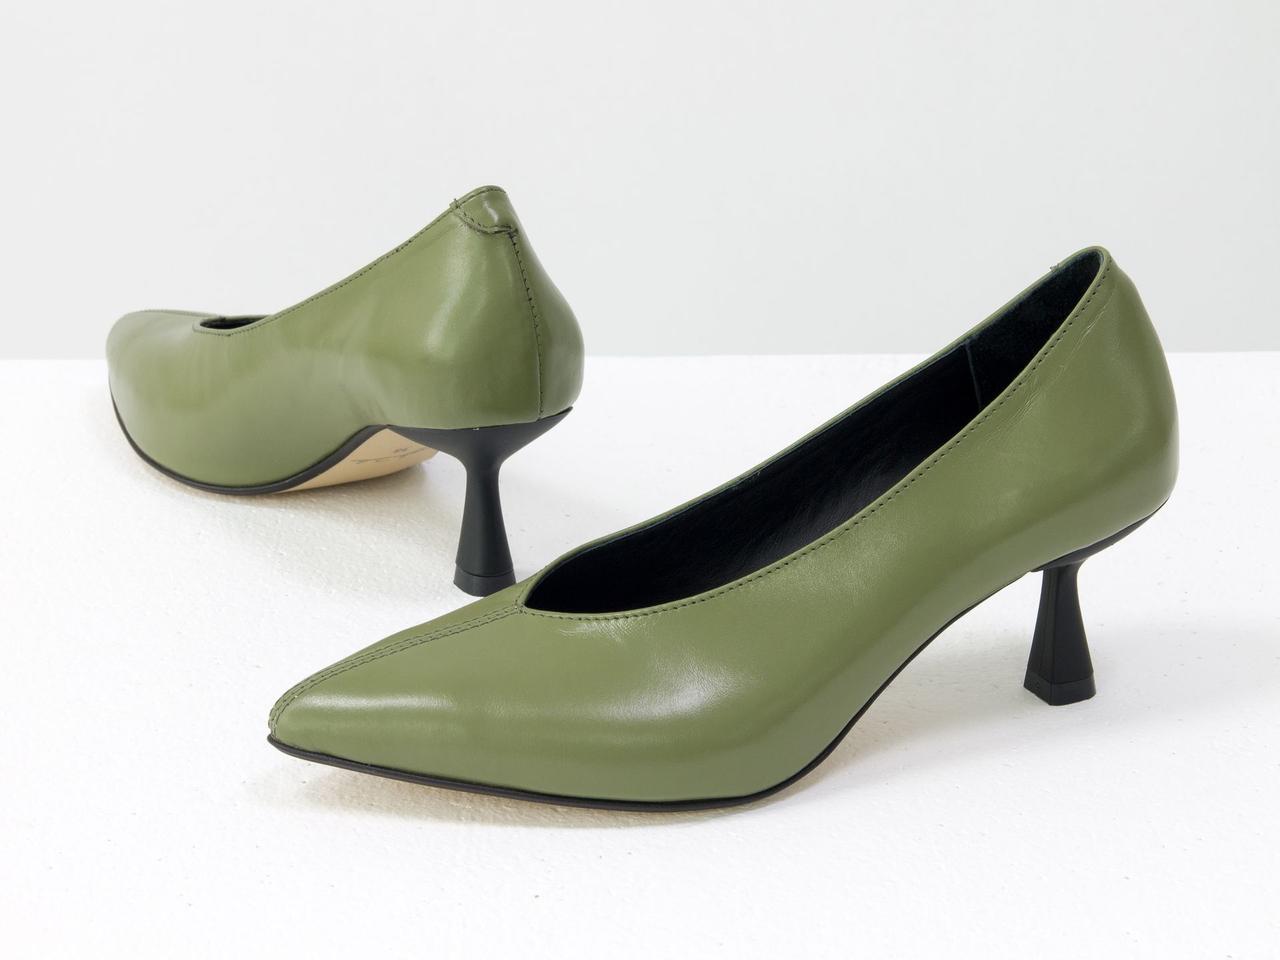 Дизайнерські туфлі рукавички glove shoes) на невисокою шпильці, шкіра фісташкового кольору